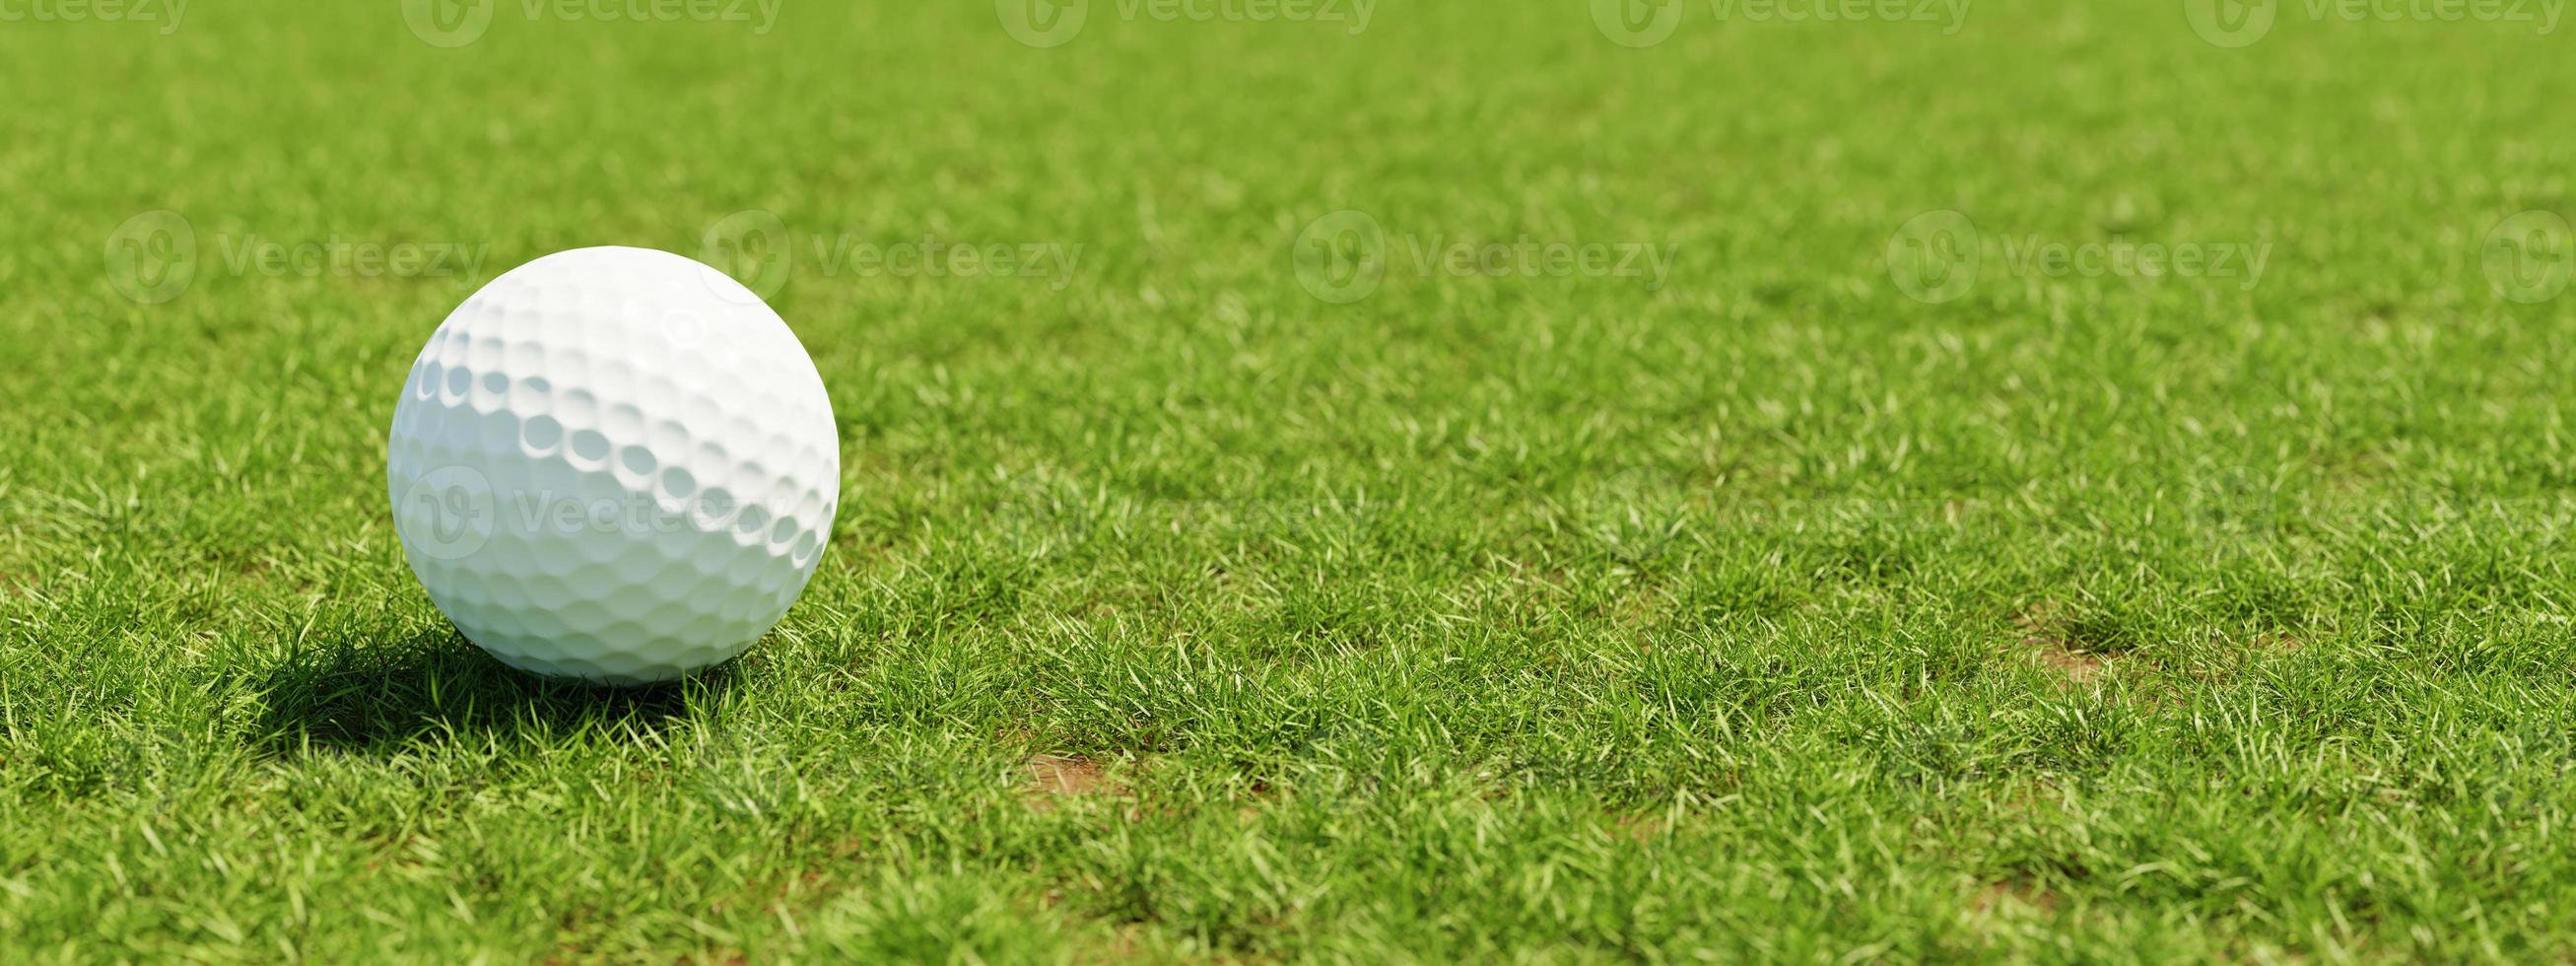 pallina da golf su erba in fairway sfondo verde. concetto di sport e atletico. rendering di illustrazioni 3d foto